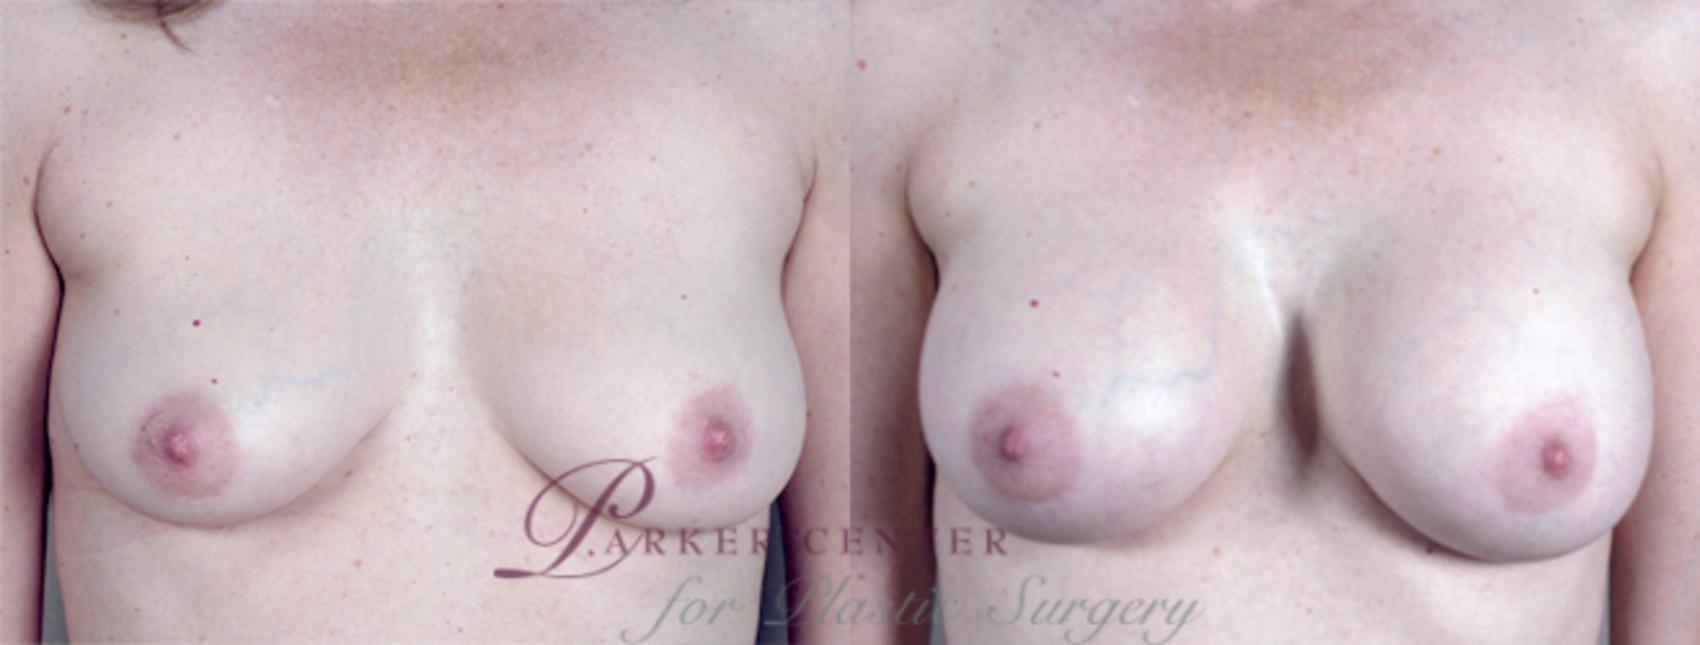 Liposuction Case 384 Before & After View #1 | Paramus, NJ | Parker Center for Plastic Surgery